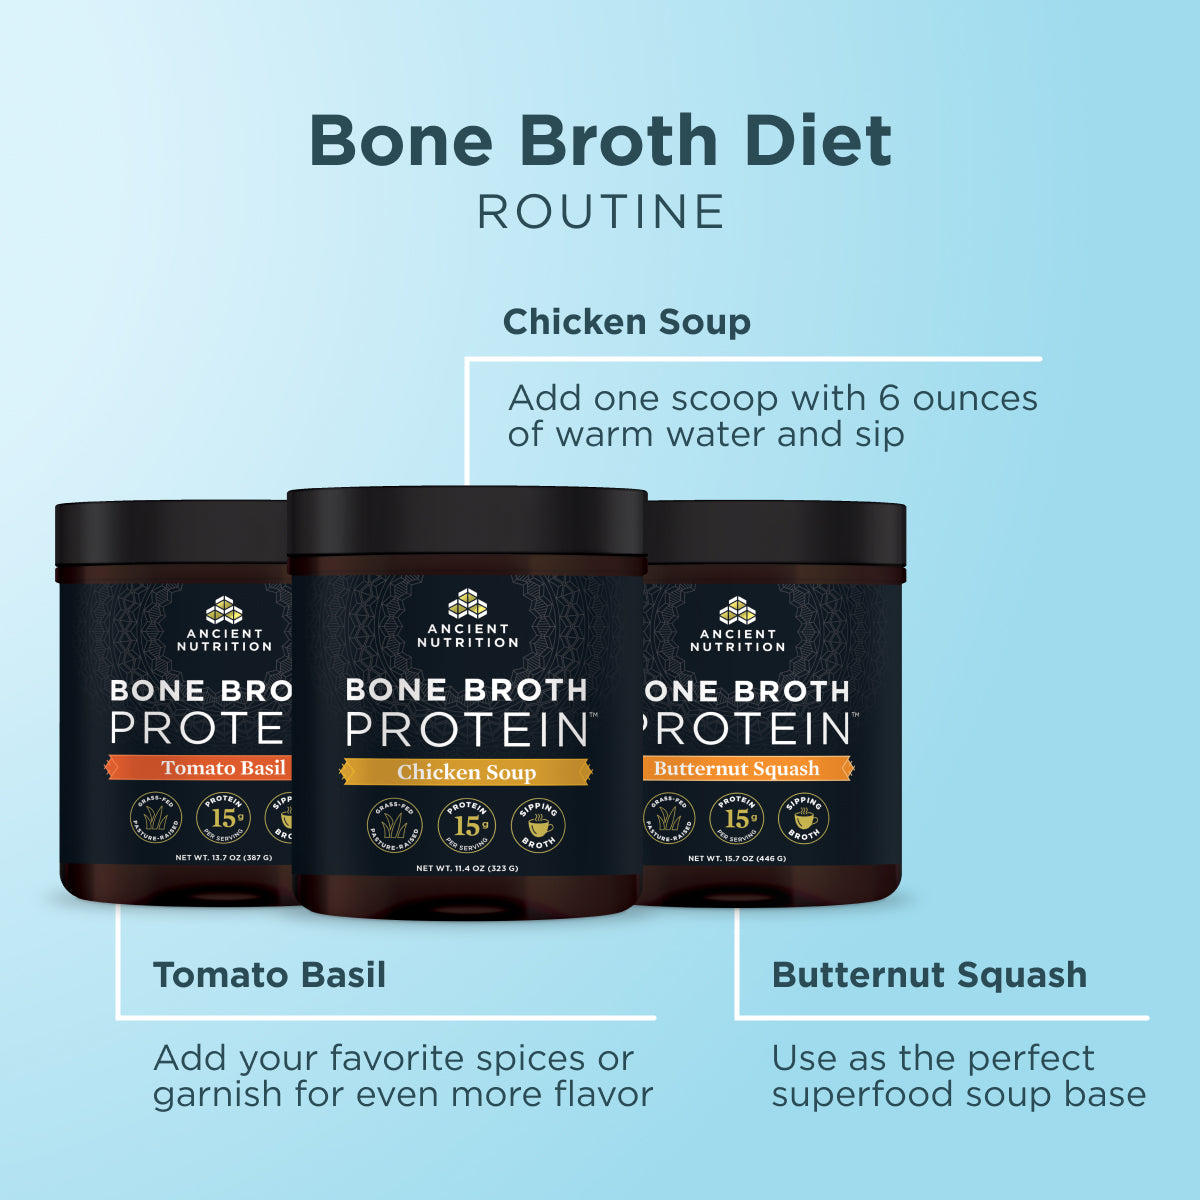 21 Day Bone Broth Diet routine